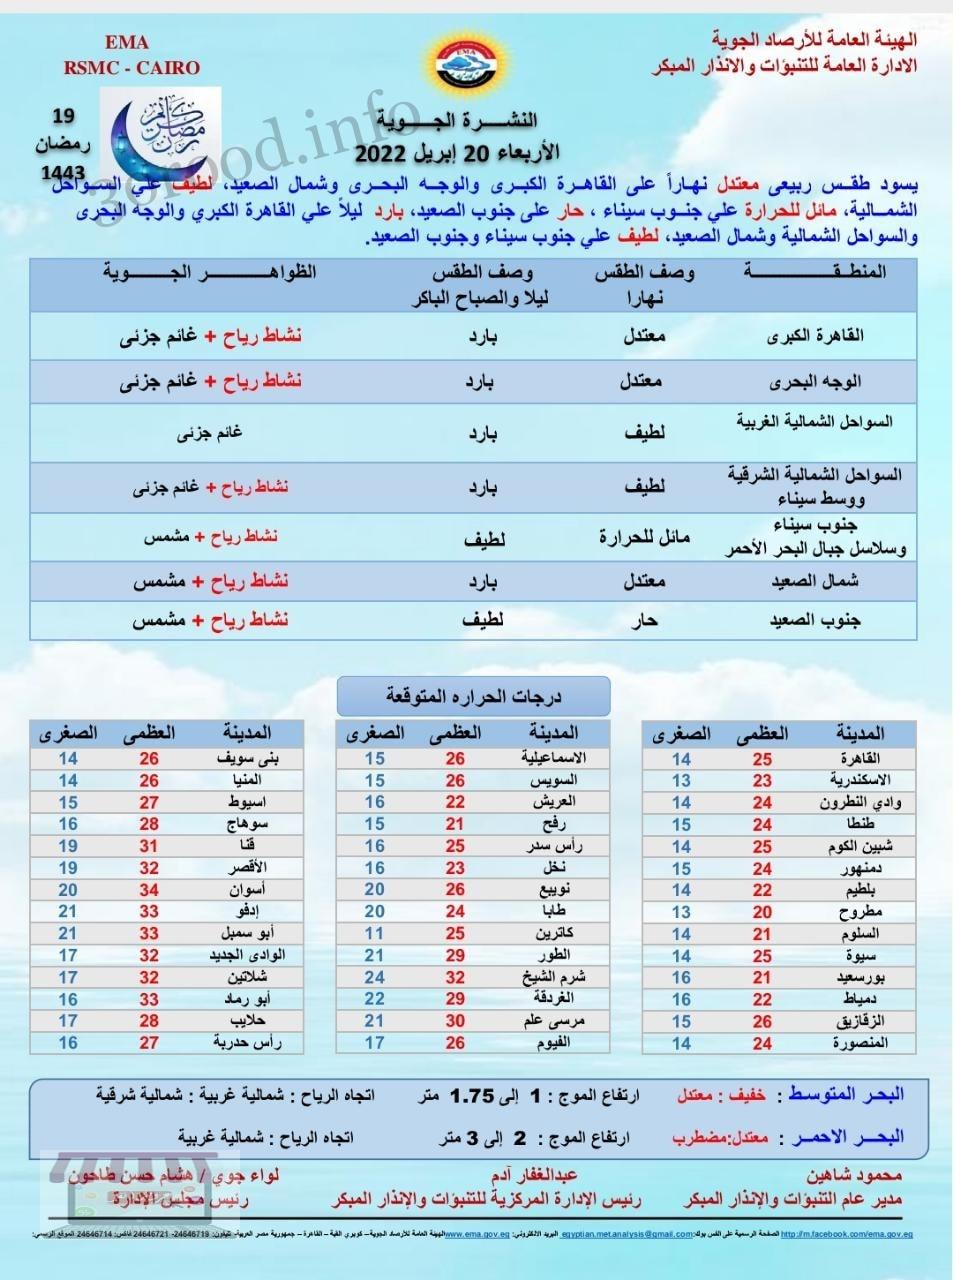 اخبار الطقس فى مصر الاربعاء 20 ابريل 2022 النشرة الجوية فى مصر